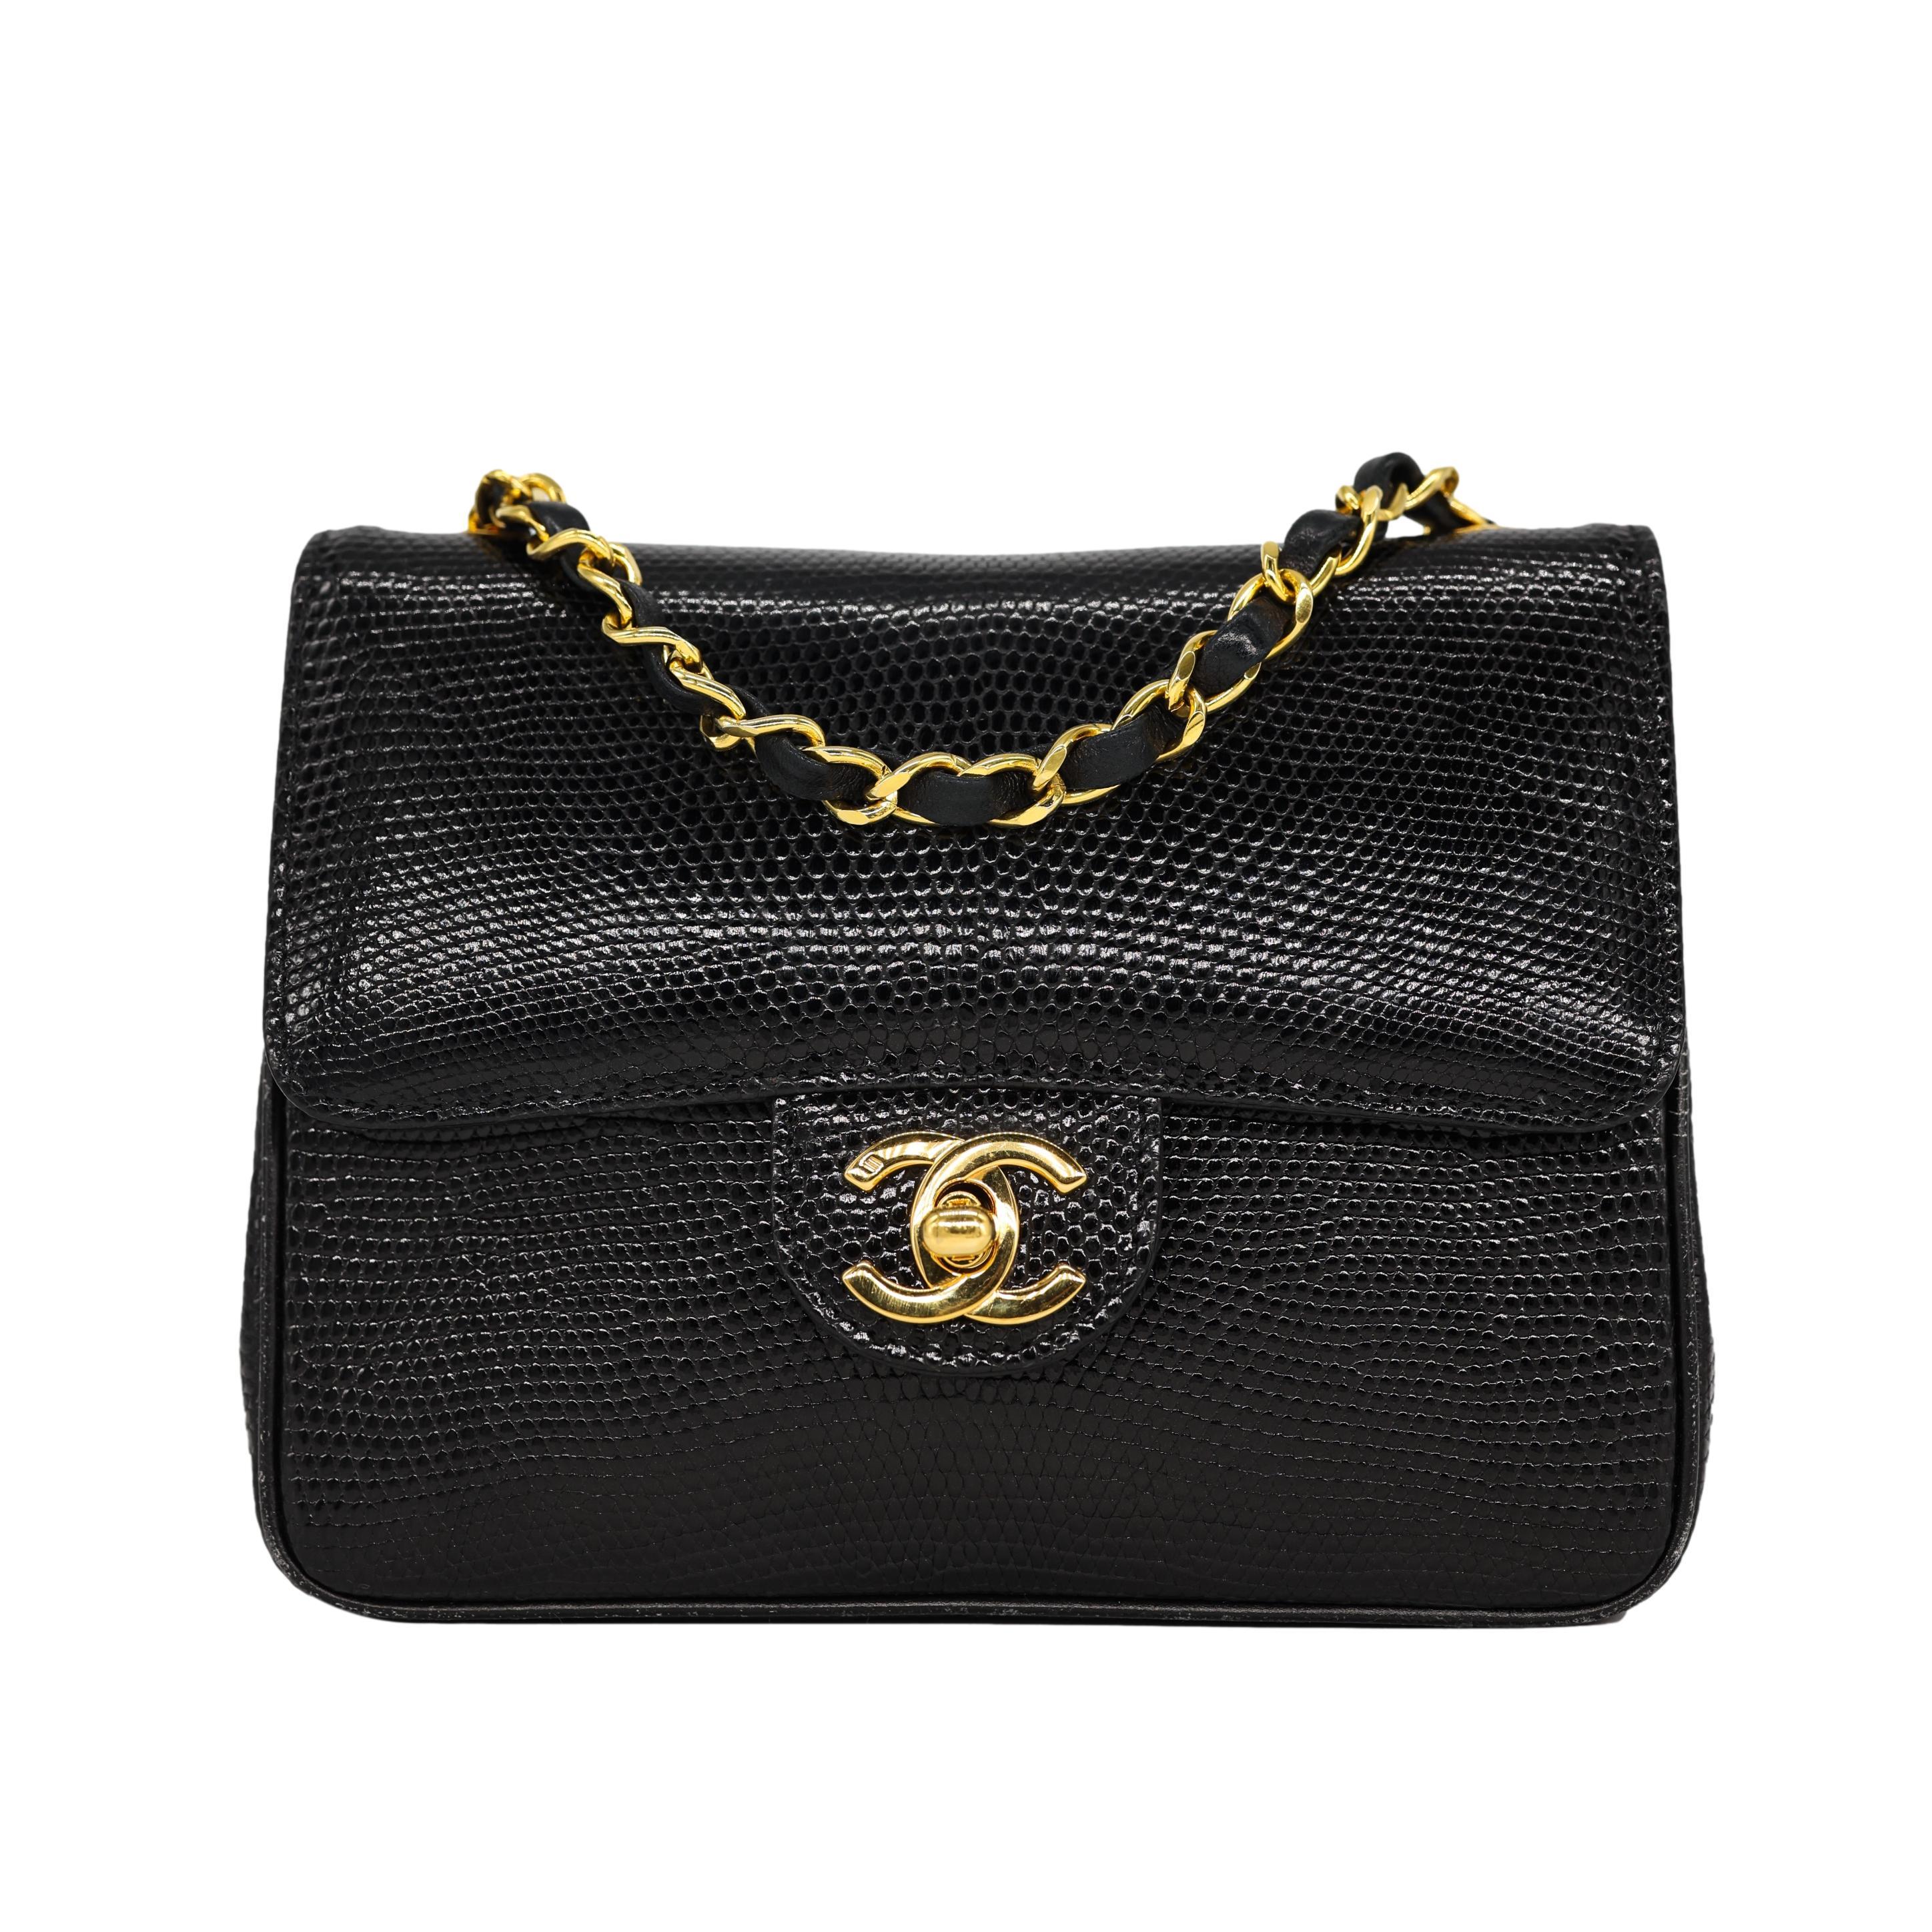 Chanel Vintage Mini Black Lizard Envelope Cross Body Flap Bag mit 24KT Gold Hardware. Dieses außergewöhnliche und seltene Stück Chanel-Geschichte wurde zwischen 1986 und 1988 mit der Seriennummer 